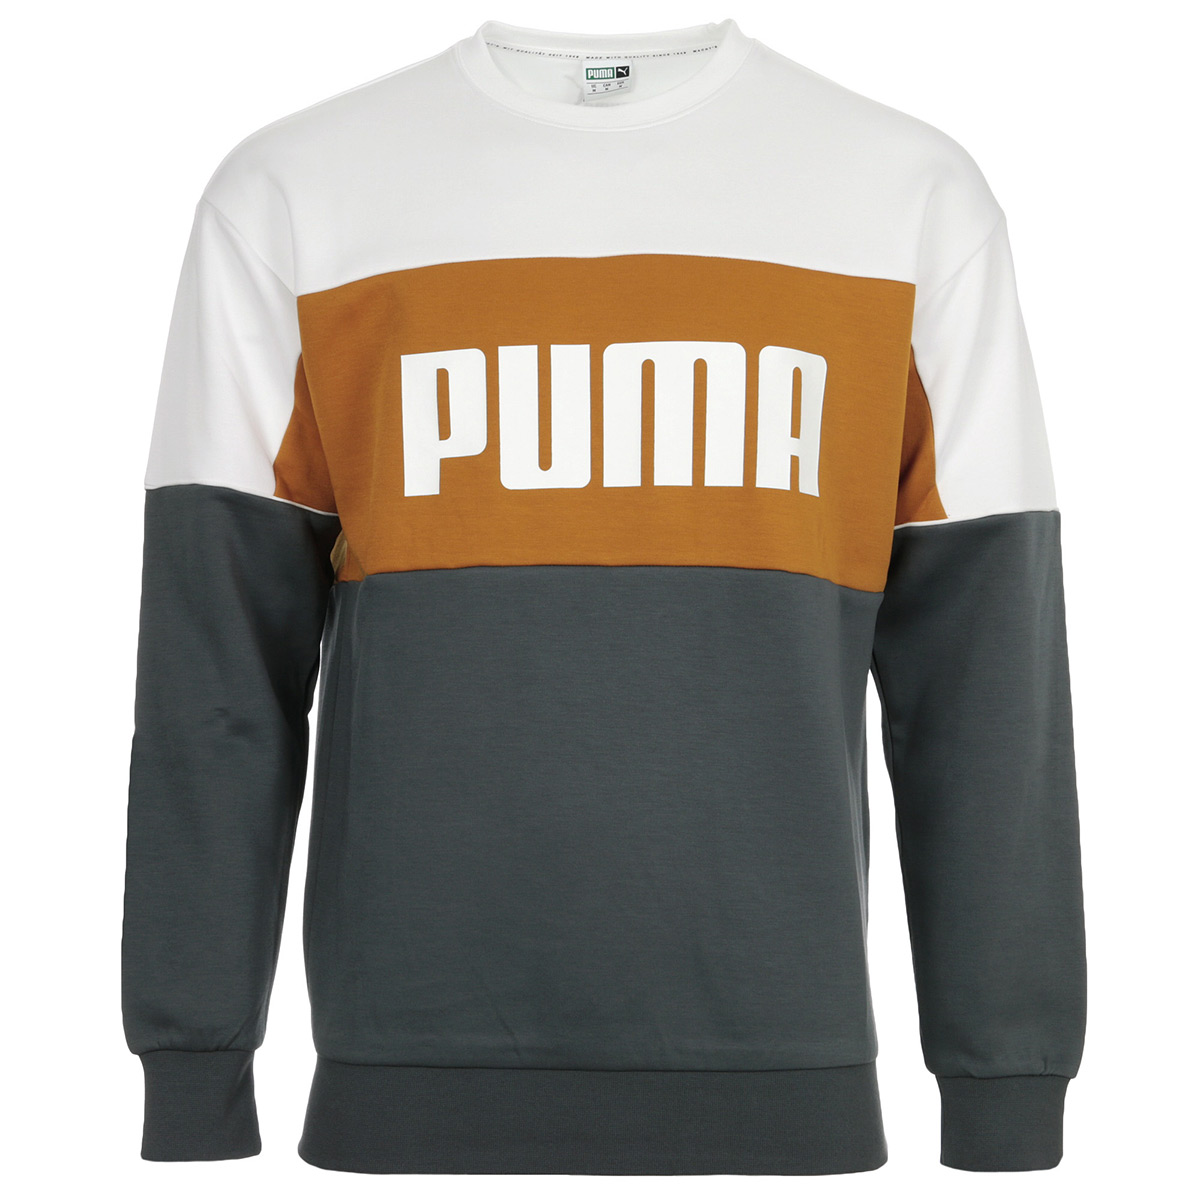 Vêtement Sweats Puma homme Retro Crew Dk taille Gris Coton | eBay